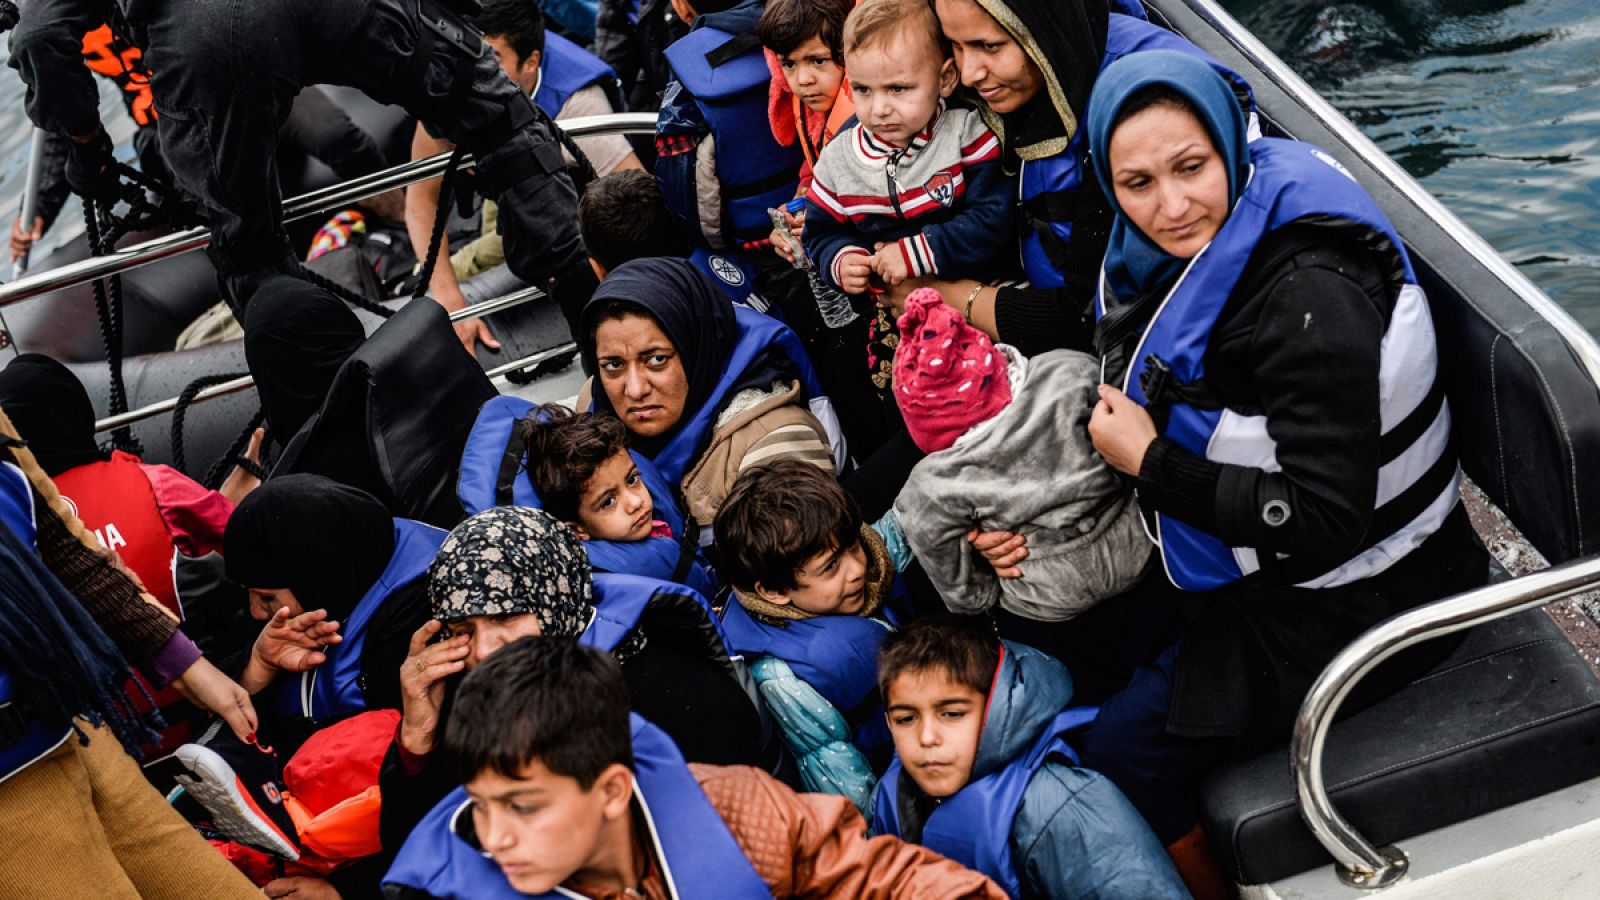 Refugiados en un barco de la Guardia Costera portuguesa tras su rescate, en la isla de Lesbos, Grecia, en octubre de 2015.